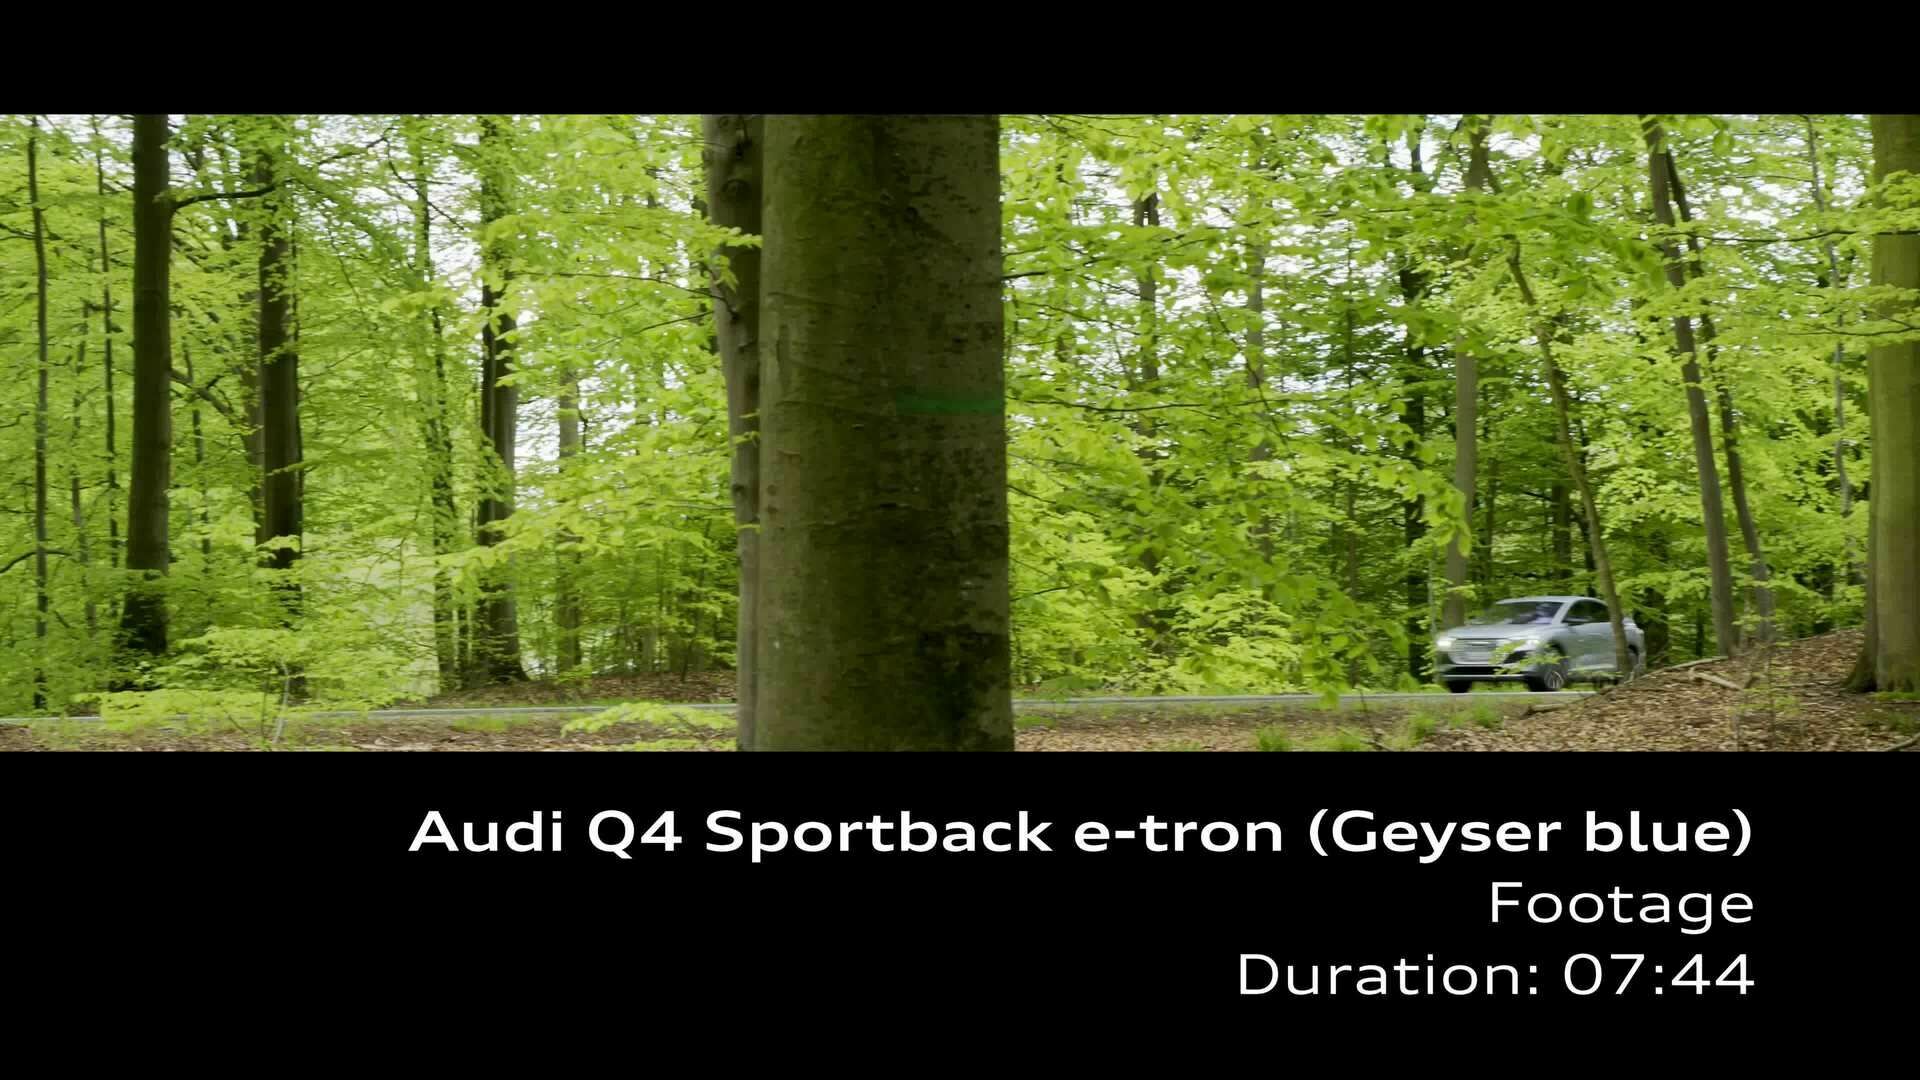 Footage: Audi Q4 Sportback e-tron – Geyser blue